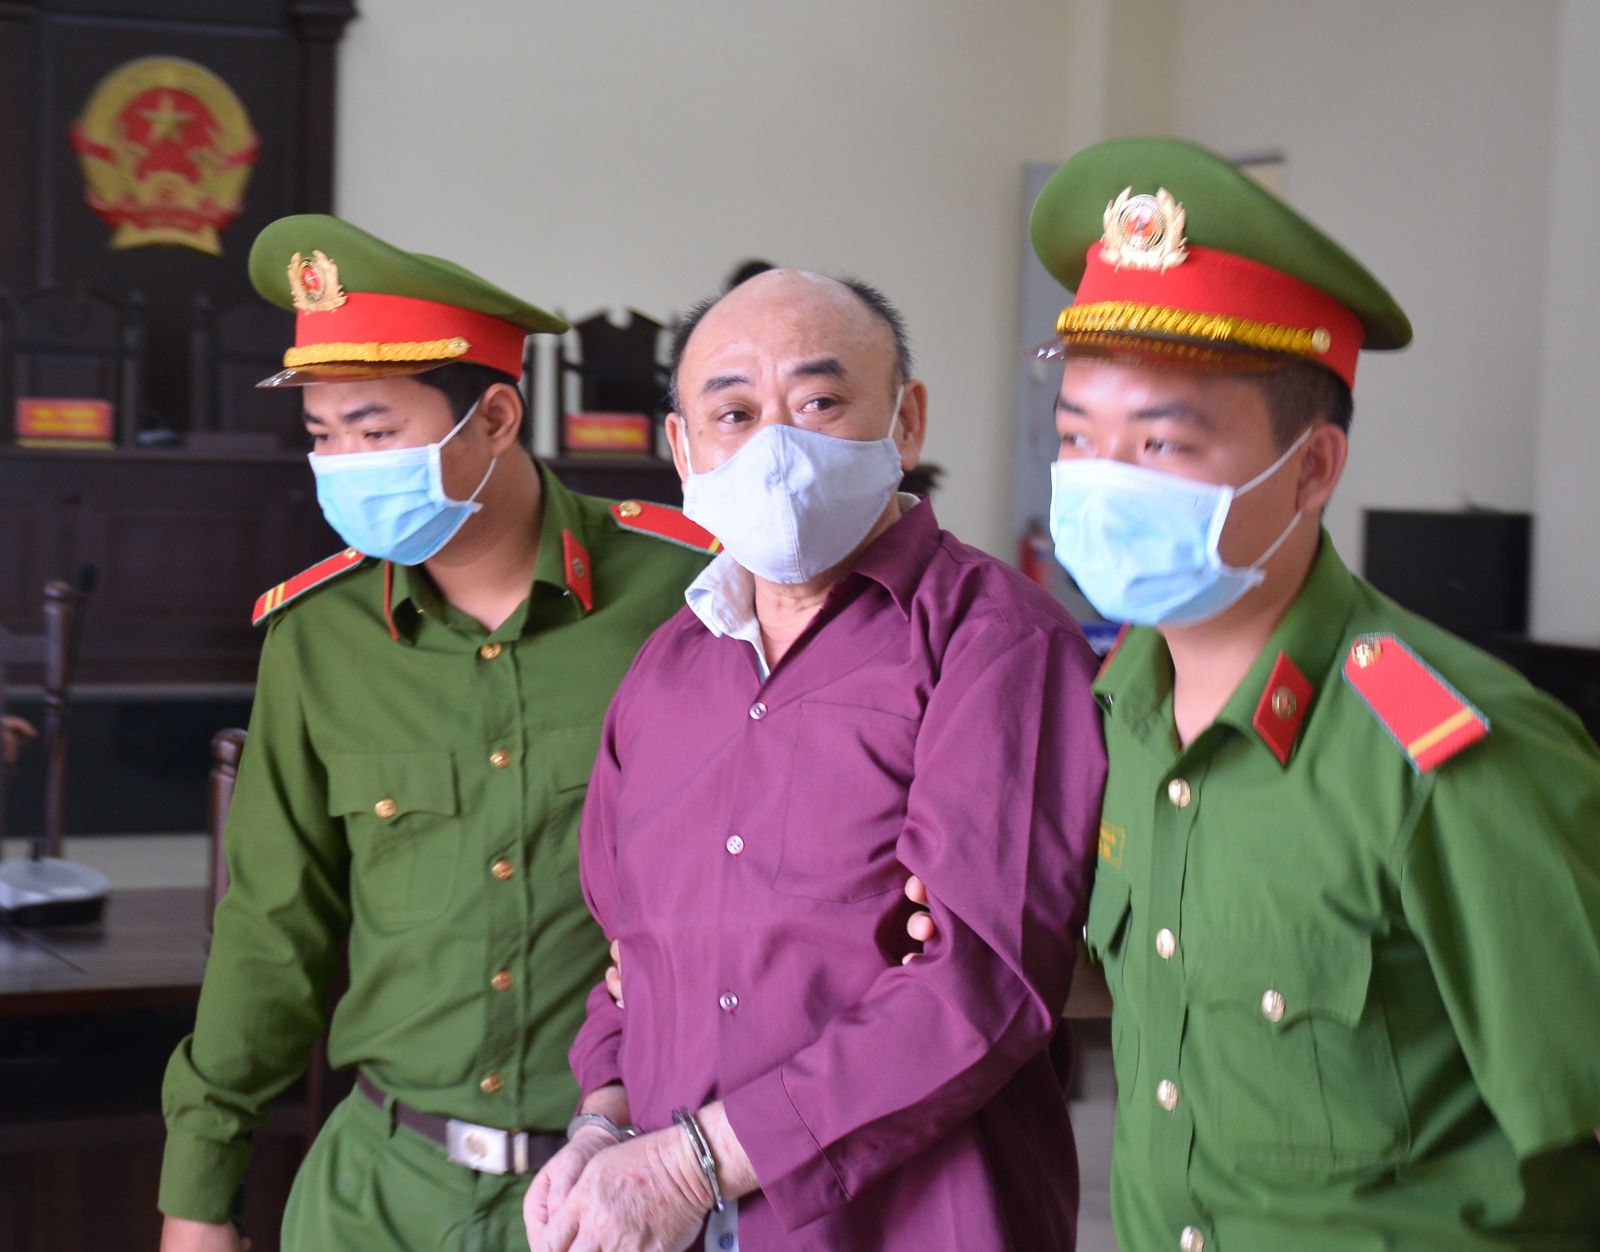 Phiên tòa xét xử Nguyễn Văn Nữa tiếp tục được diễn ra vào ngày 09/4 tới tại Tòa án nhân dân tỉnh